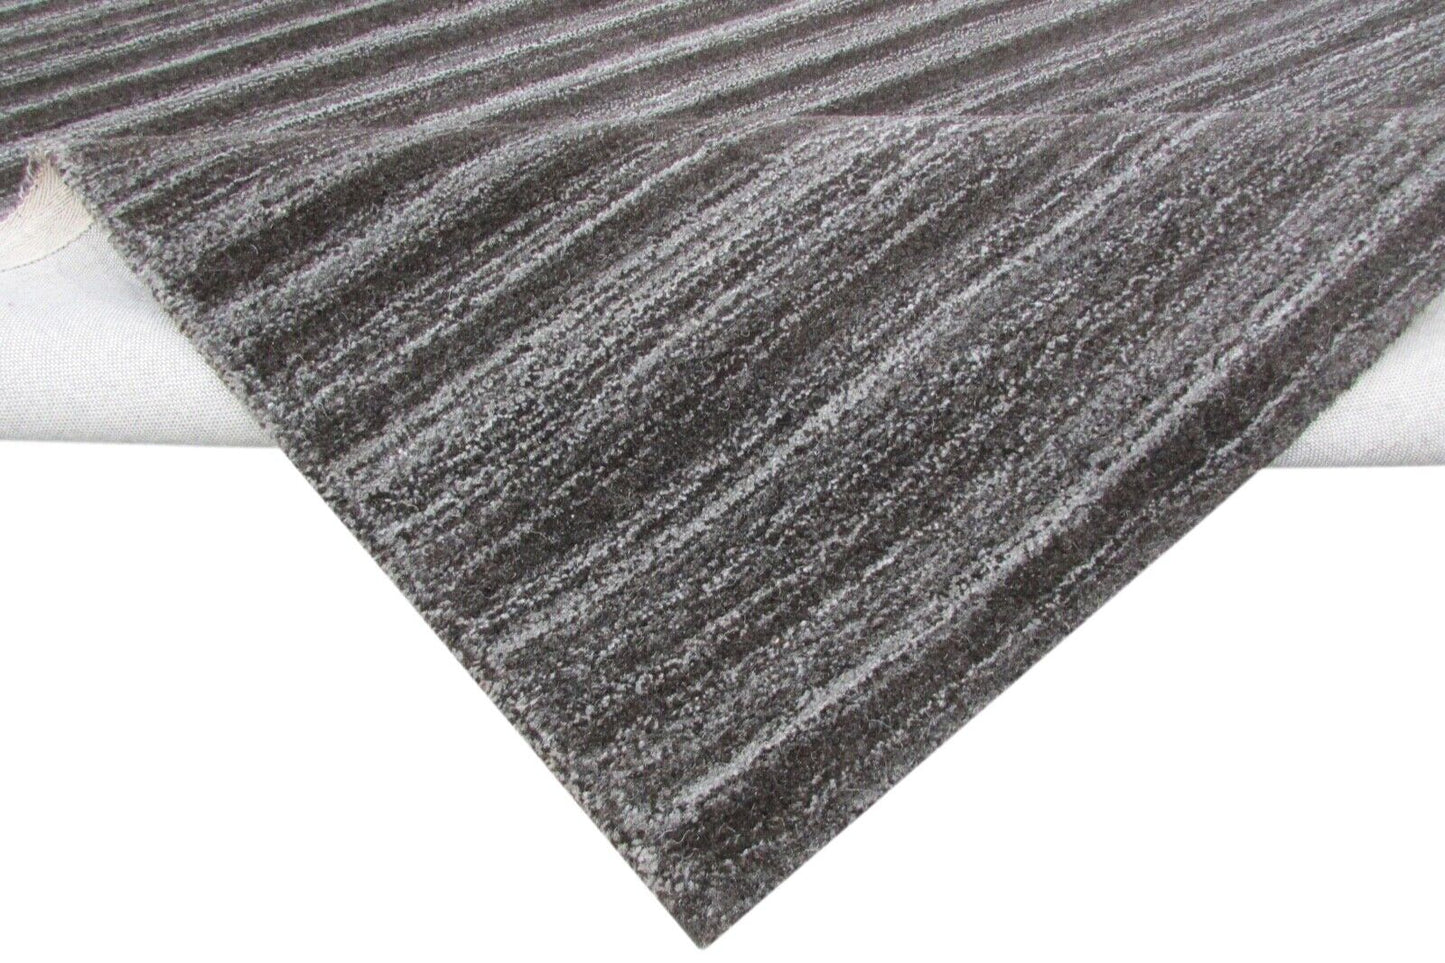 Teppich 100% Wolle Grau Schwarz 160X230 cm Wohnzimmer Design Handgetuftet T805